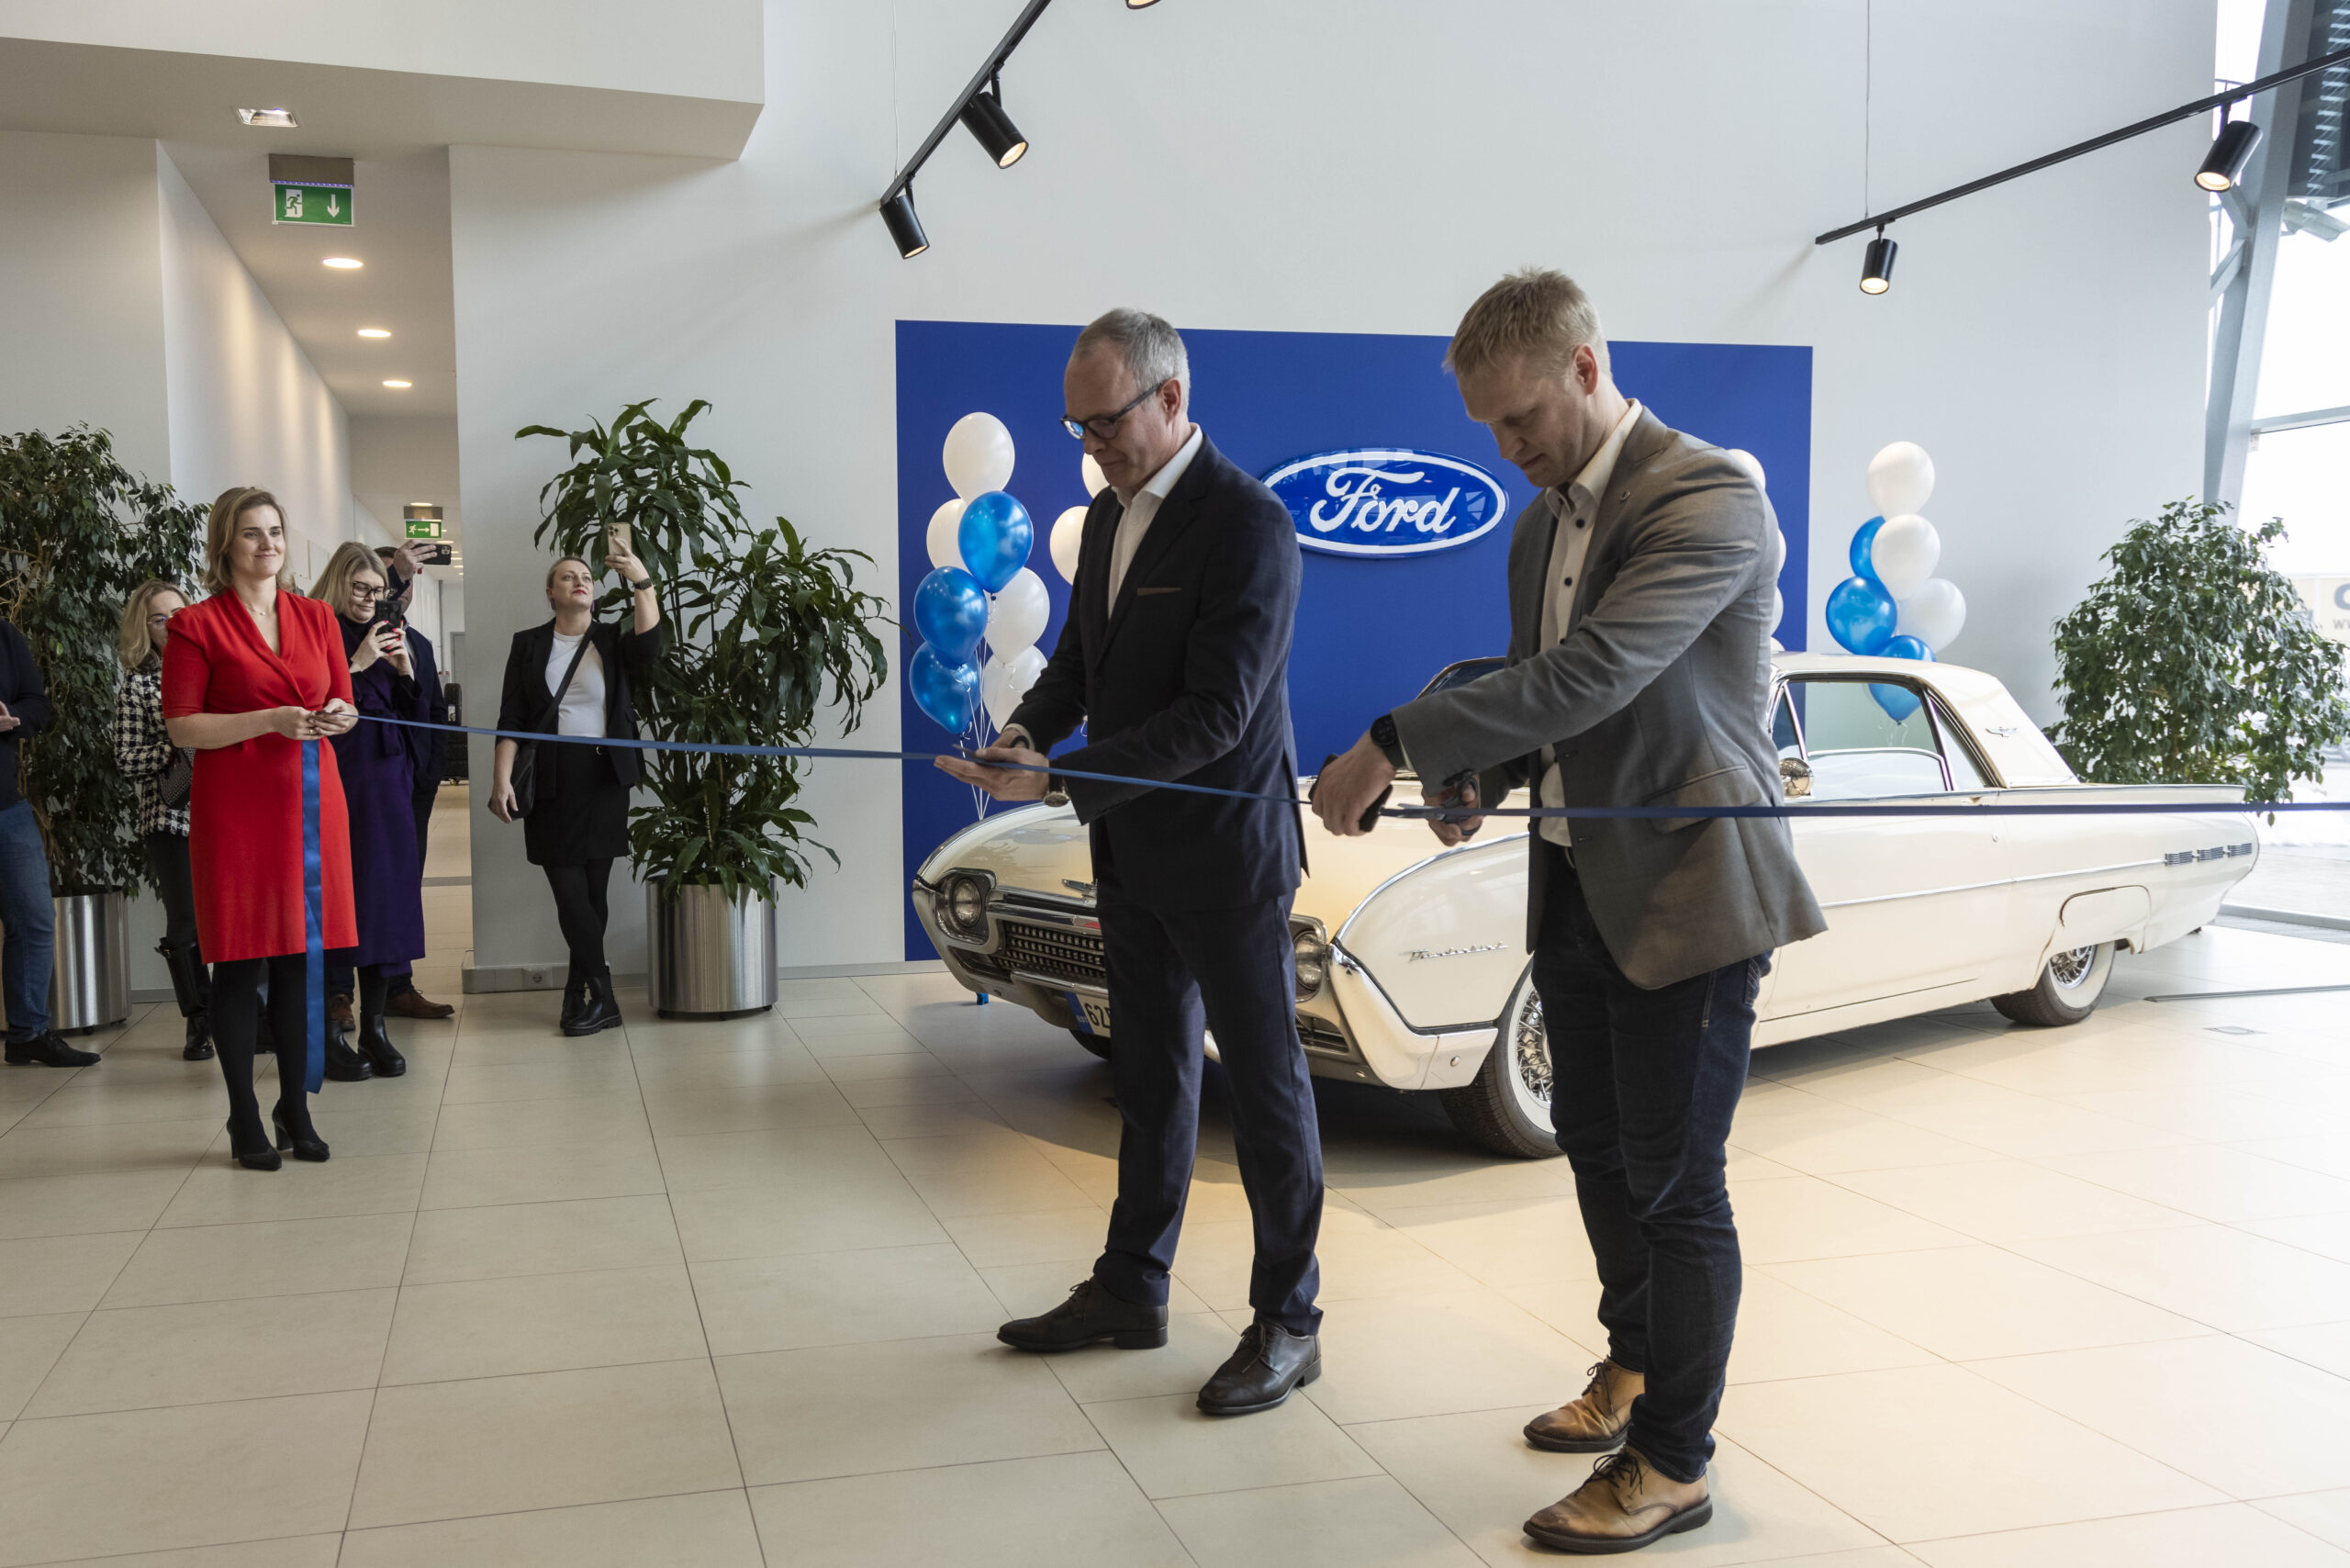 Kommunikatsioonibüroo In Nomine annab hoogsalt teada, et Inchcape Motors avas Peetris Läike teel esimese Fordi esinduse, mis hõlmab müügisaali ja järelteenindus